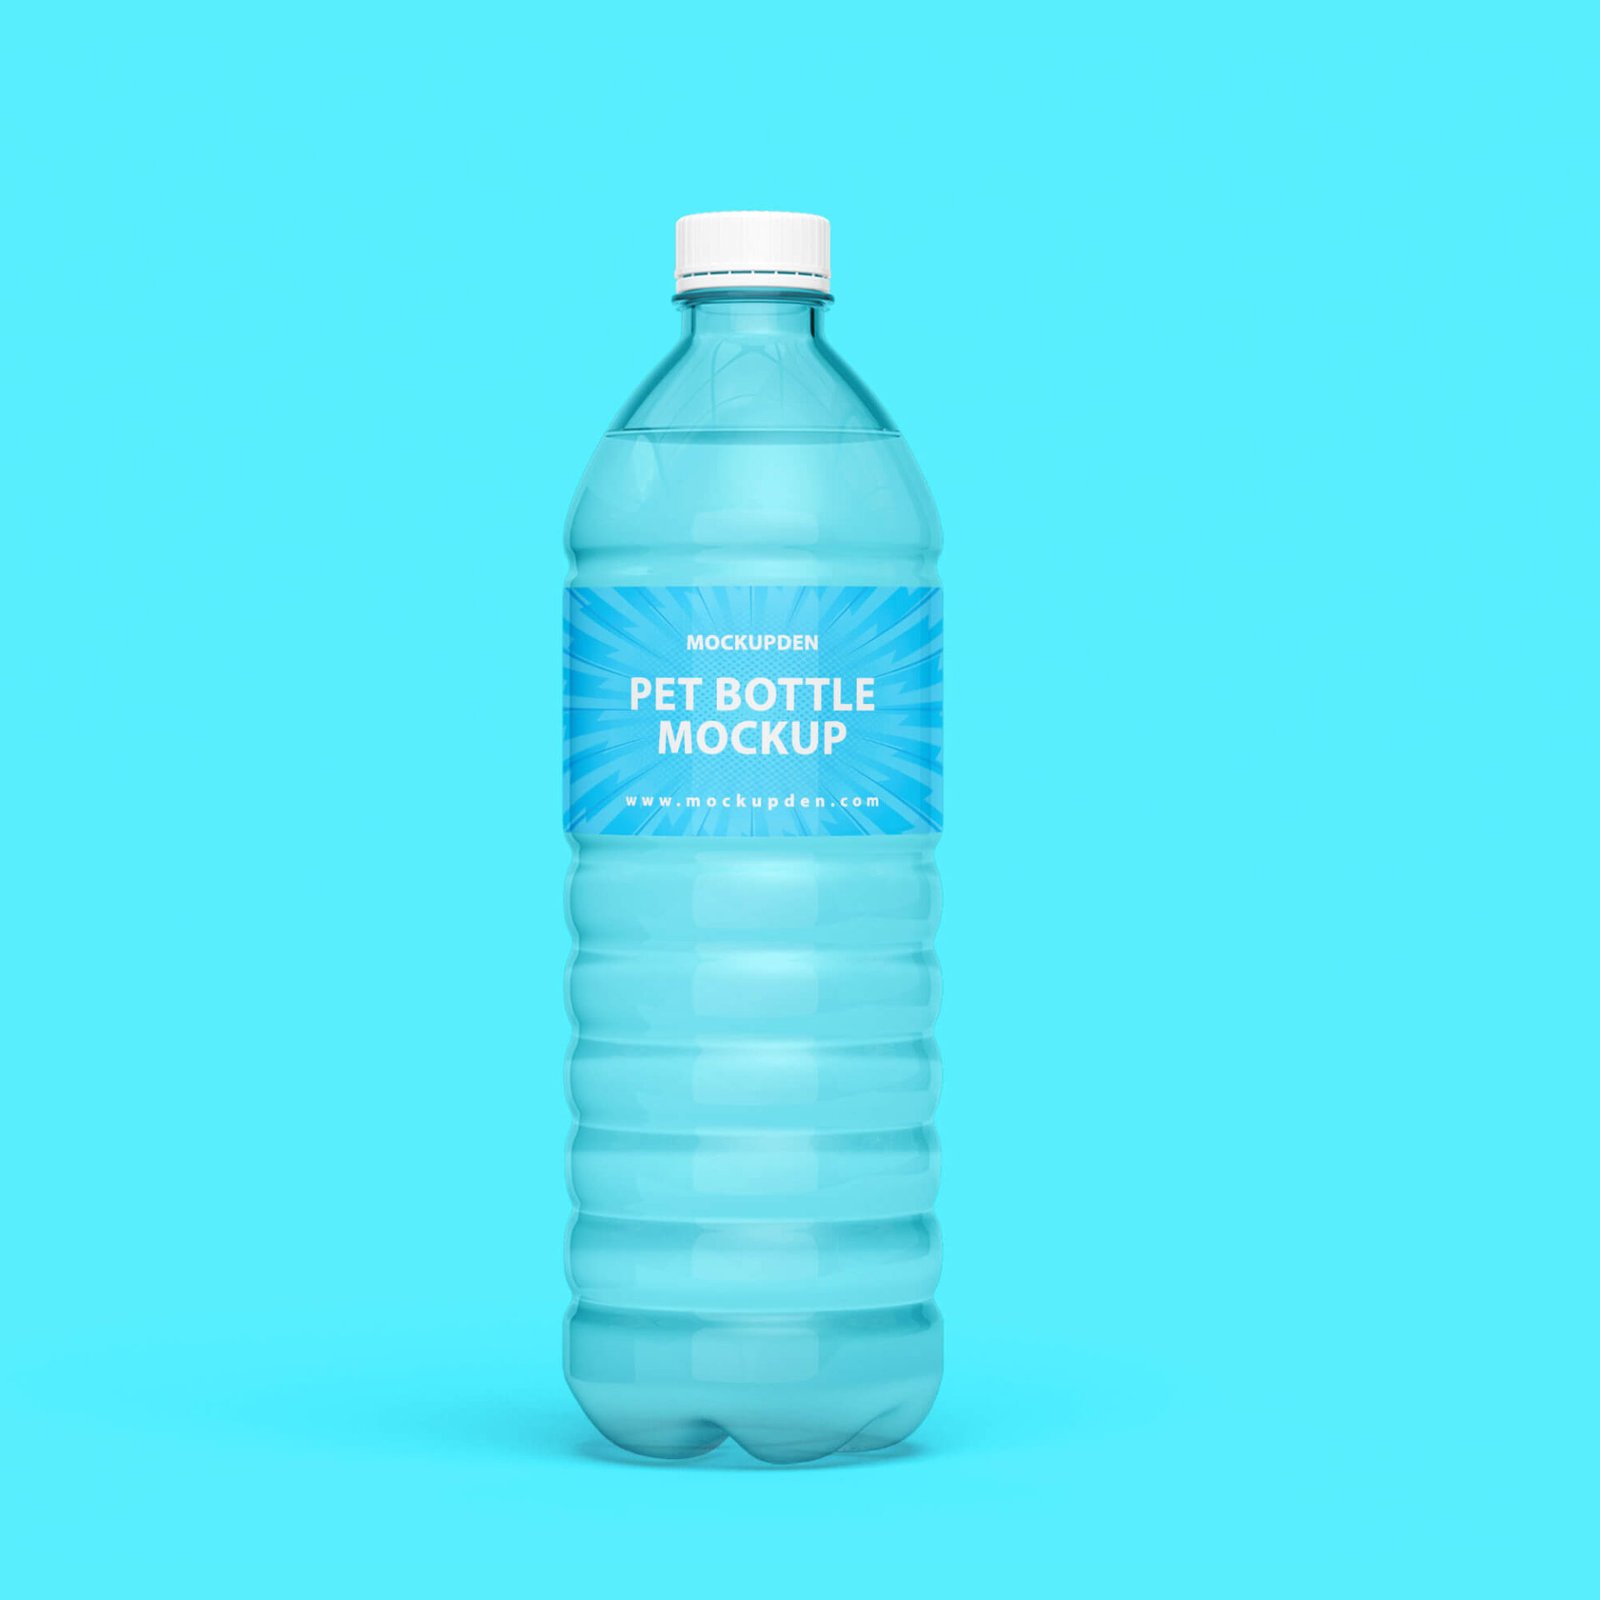 Download 25+ Best Pet Bottle Mockup PSD Design Templates - Mockup Den